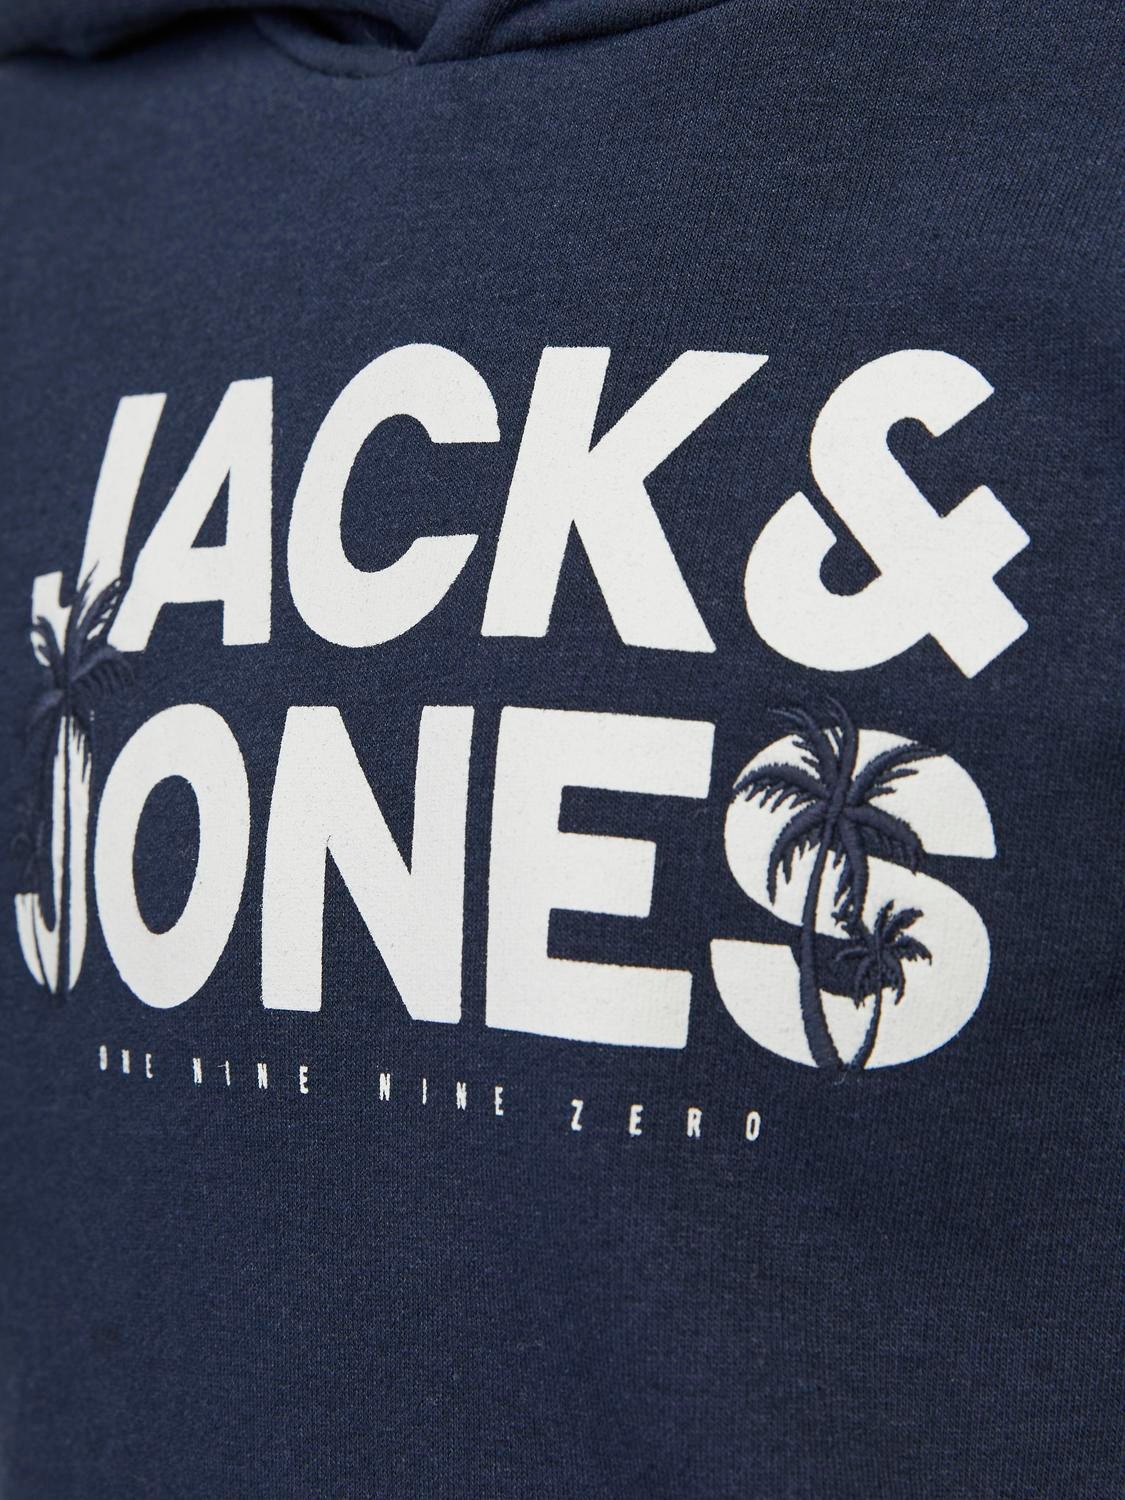 Jack & Jones Gedruckt Kapuzenpullover Für jungs -Navy Blazer - 12249676